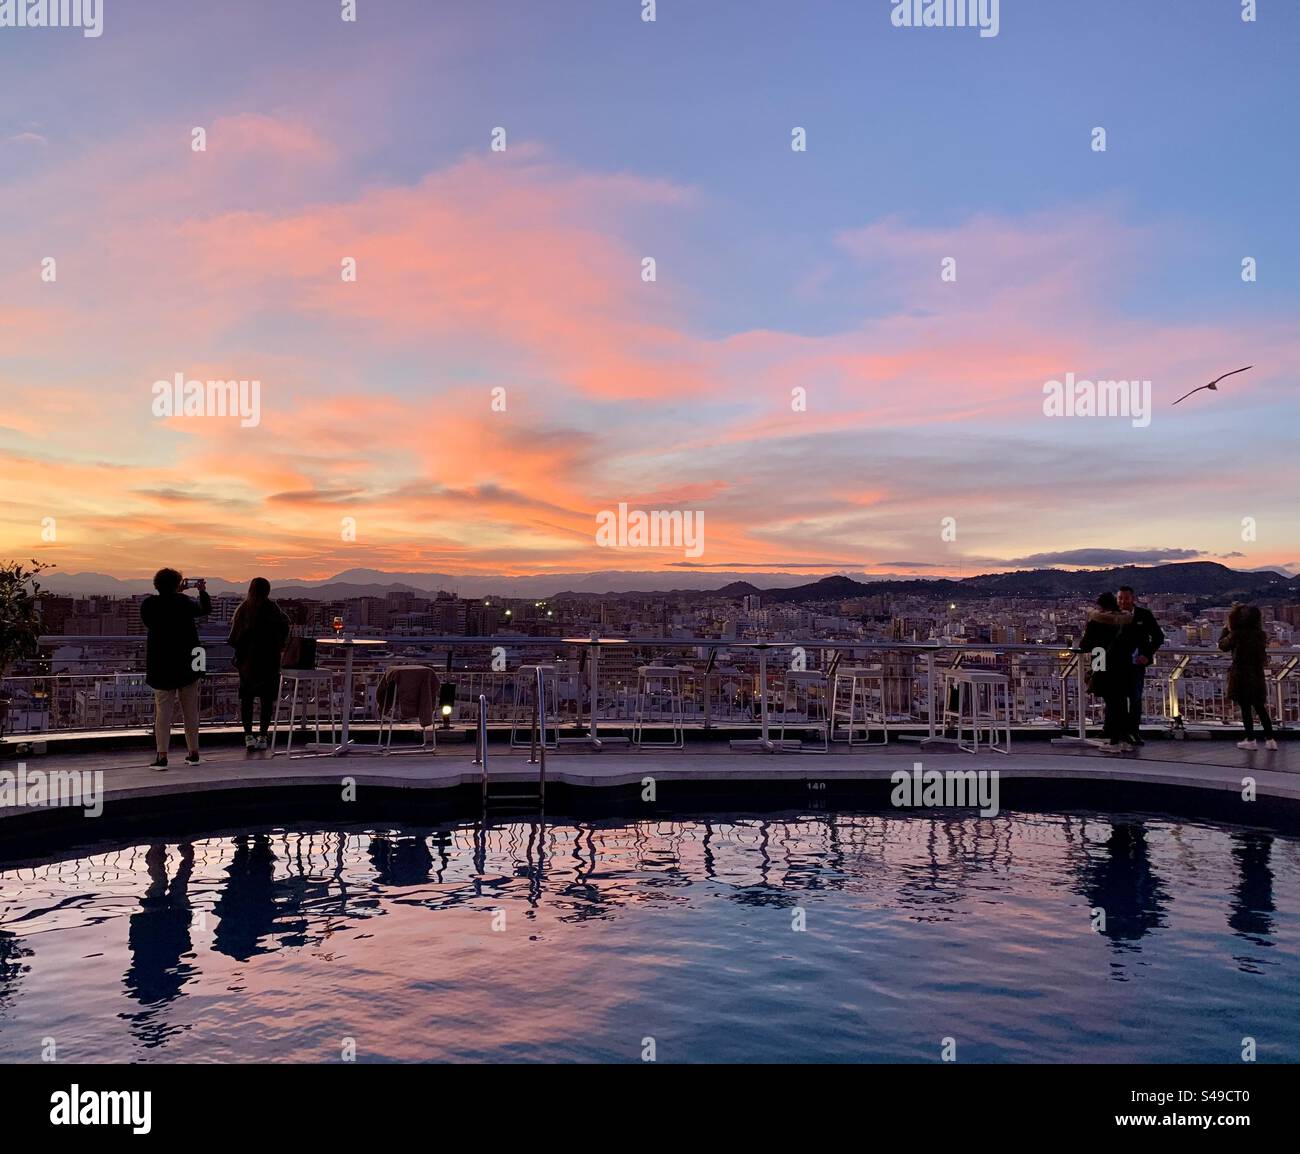 Un affascinante tramonto su Malaga, Spagna, che diffonde calde sfumature sullo skyline della città e si riflette nelle acque tranquille. Una serata idilliaca nel cuore della Costa del Sol. Foto Stock